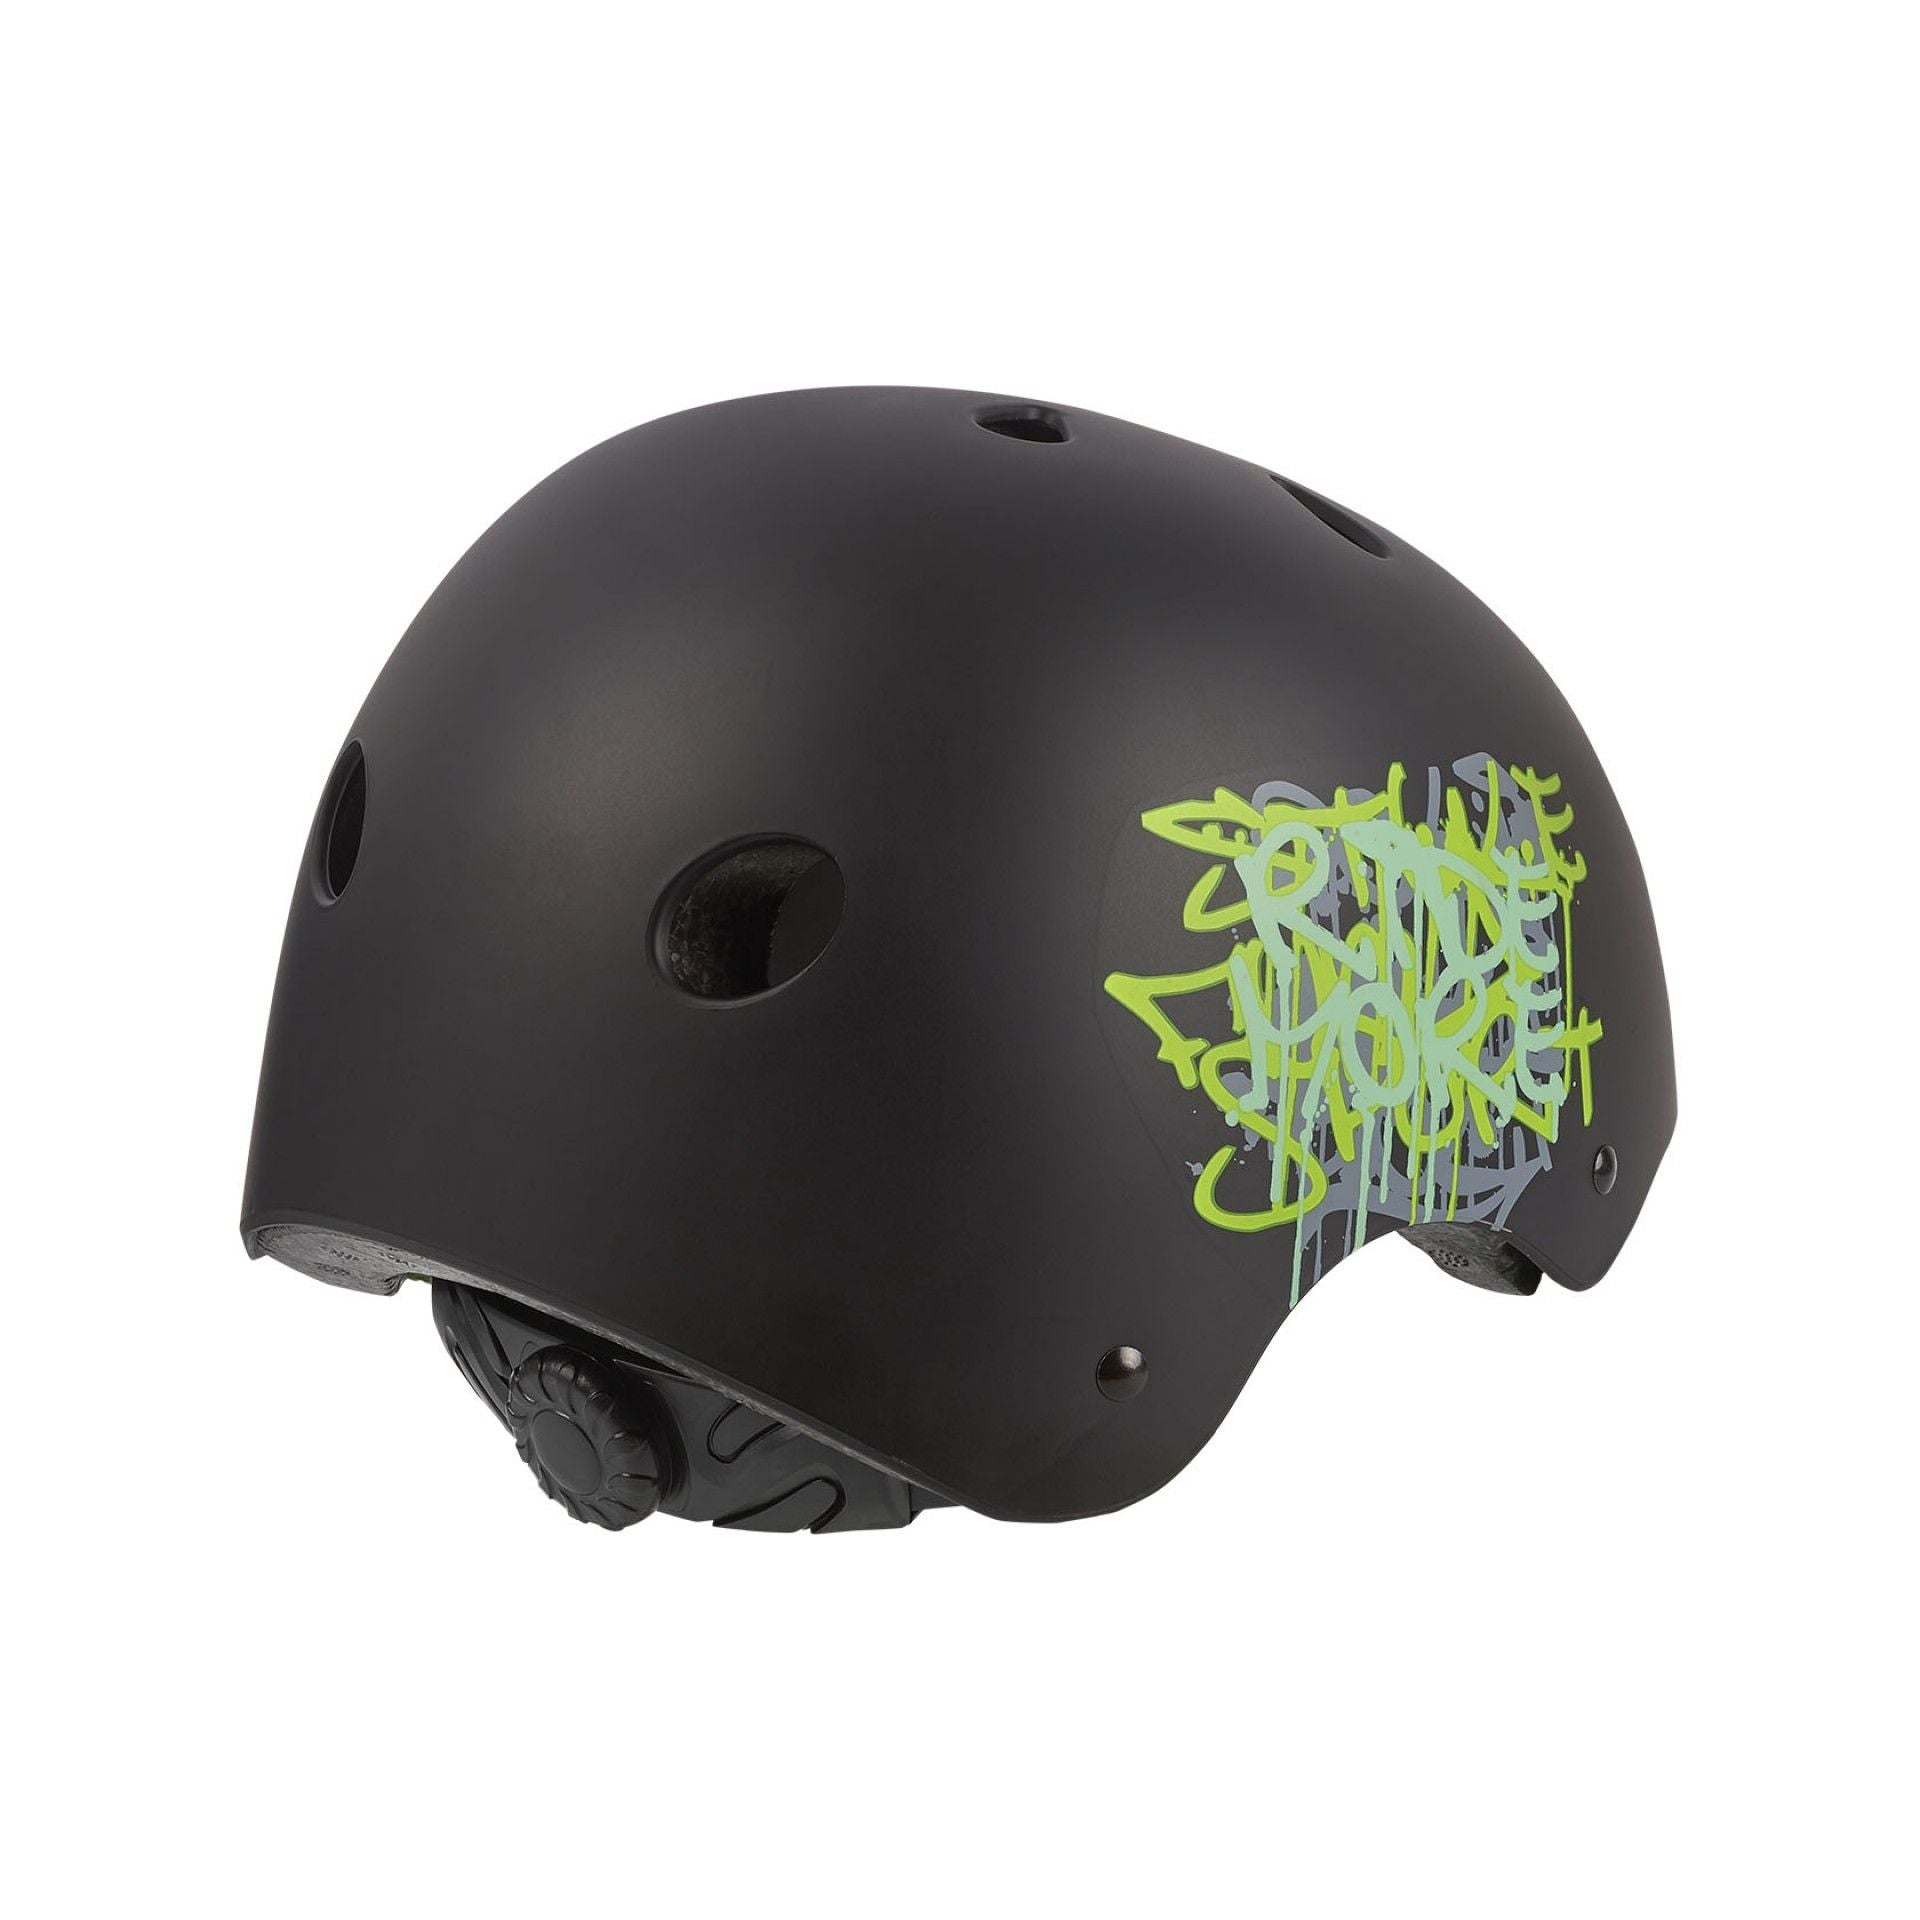 Polisport - Urban Radical Helmet